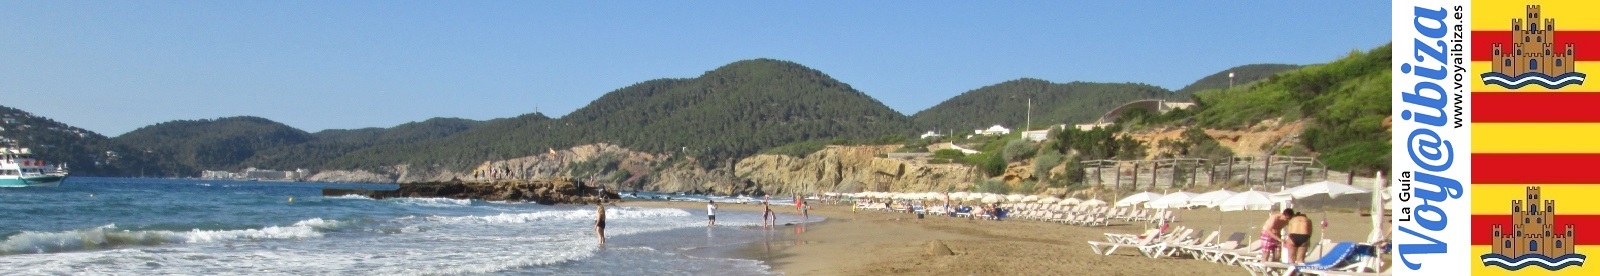 Playas de Santa Eulalia - Ibiza: Es Figueral